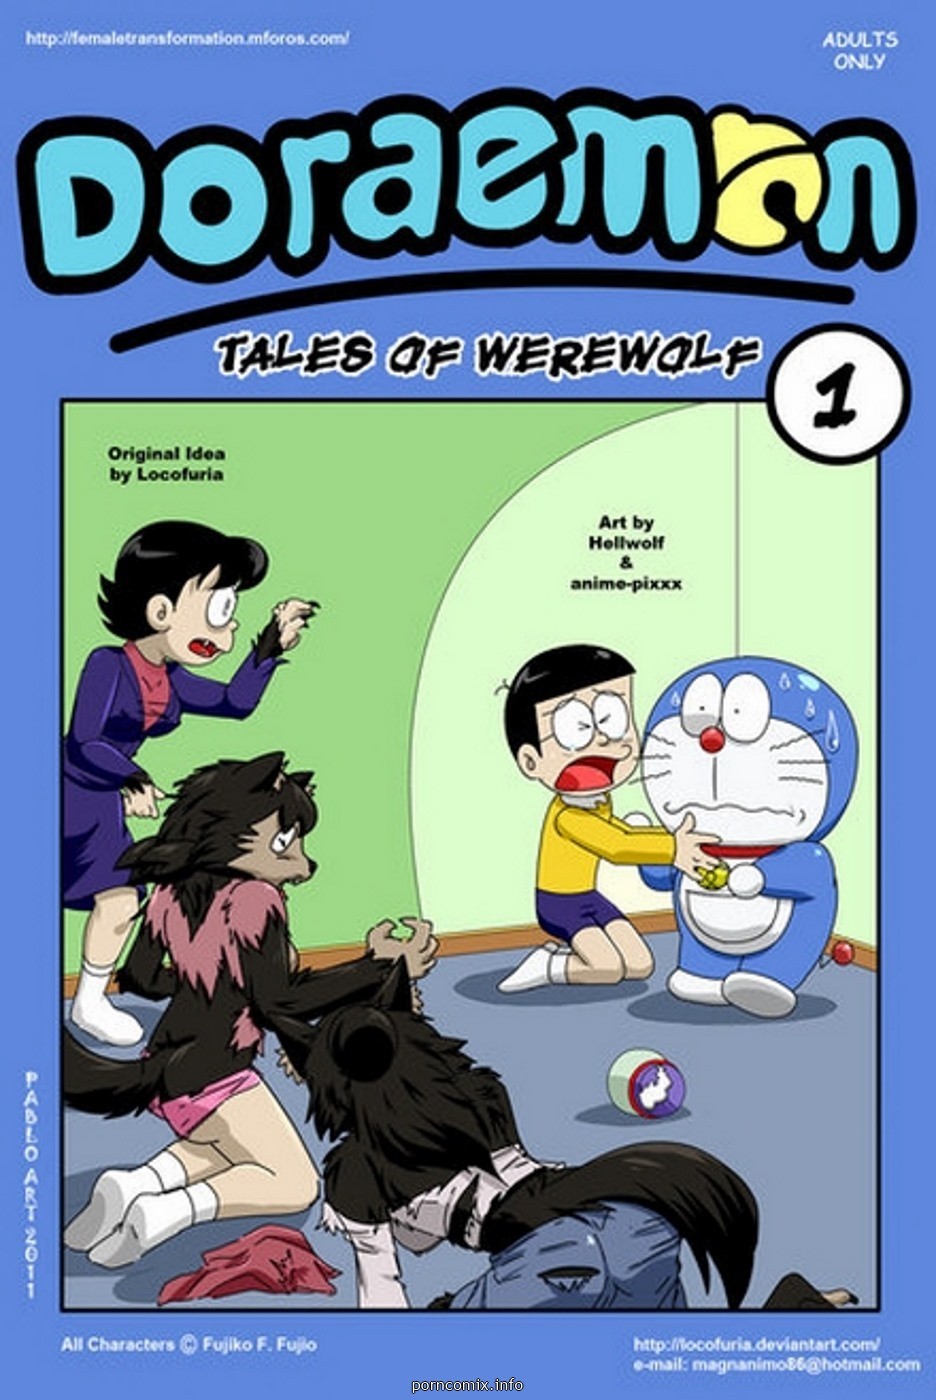 Werewolf Sex Toons - Doraemon Tales Of Werewolf 1 - KingComiX.com